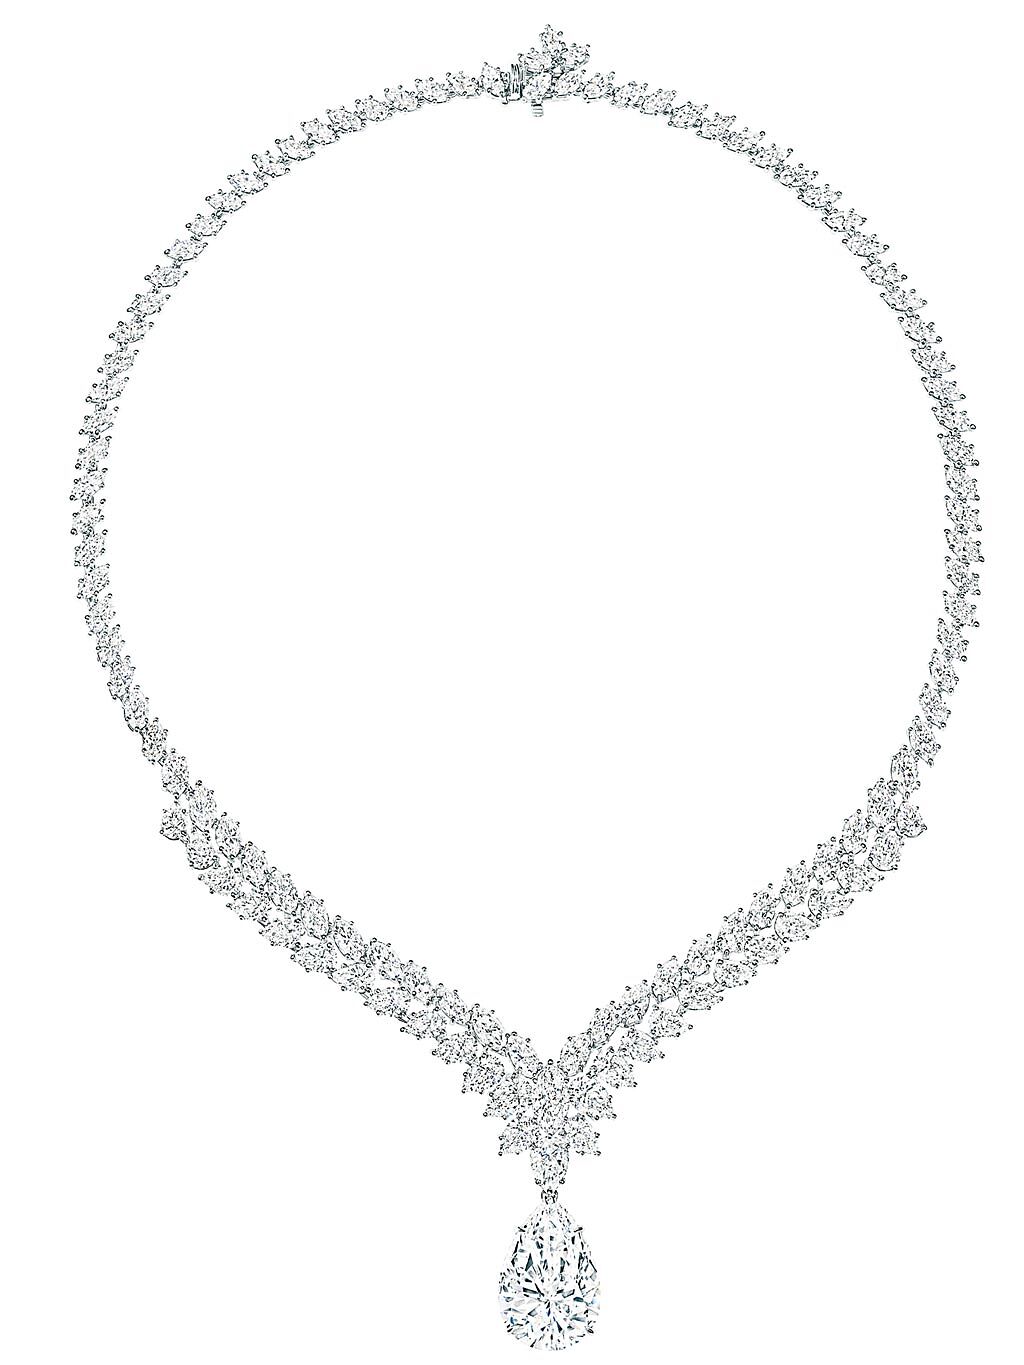 海瑞溫斯頓頂級珠寶系列水滴型切工鑽石項鍊，主石為34.27克拉水滴型Type IIa美鑽，4億25萬元。（Harry Winston提供）